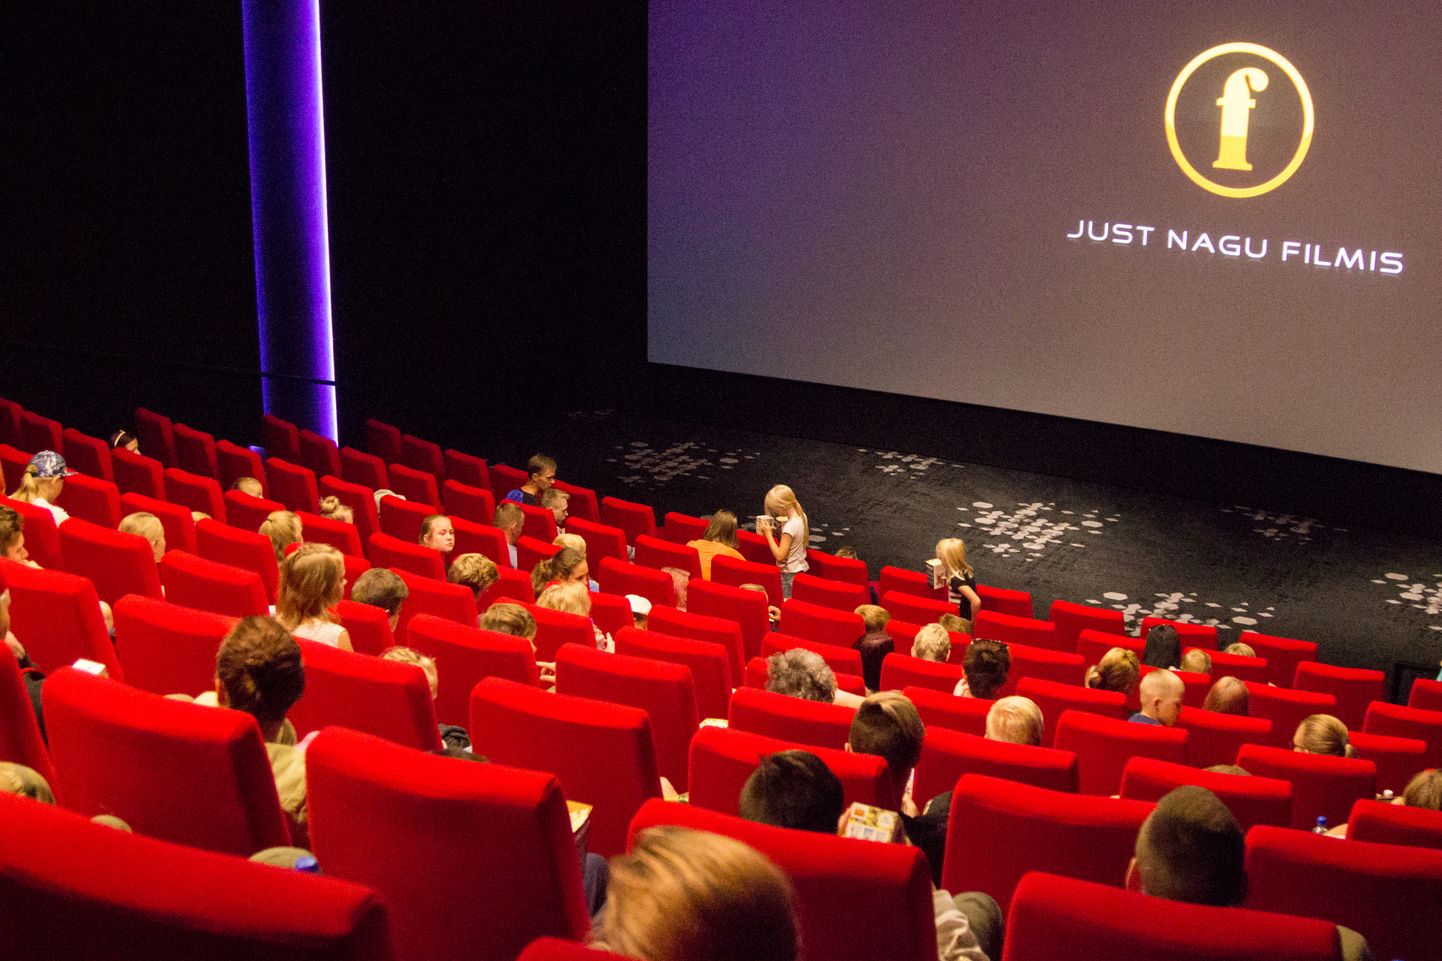 Eelmise aasta 10. märtsil avatud Forum Cinemase Centrumi kinol on kaks saali, mis mahutavad kokku 225 vaatajat. Uue tehnika ja moodsa sisustusega kino koguinvesteering ulatus 1,6 miljoni euroni.